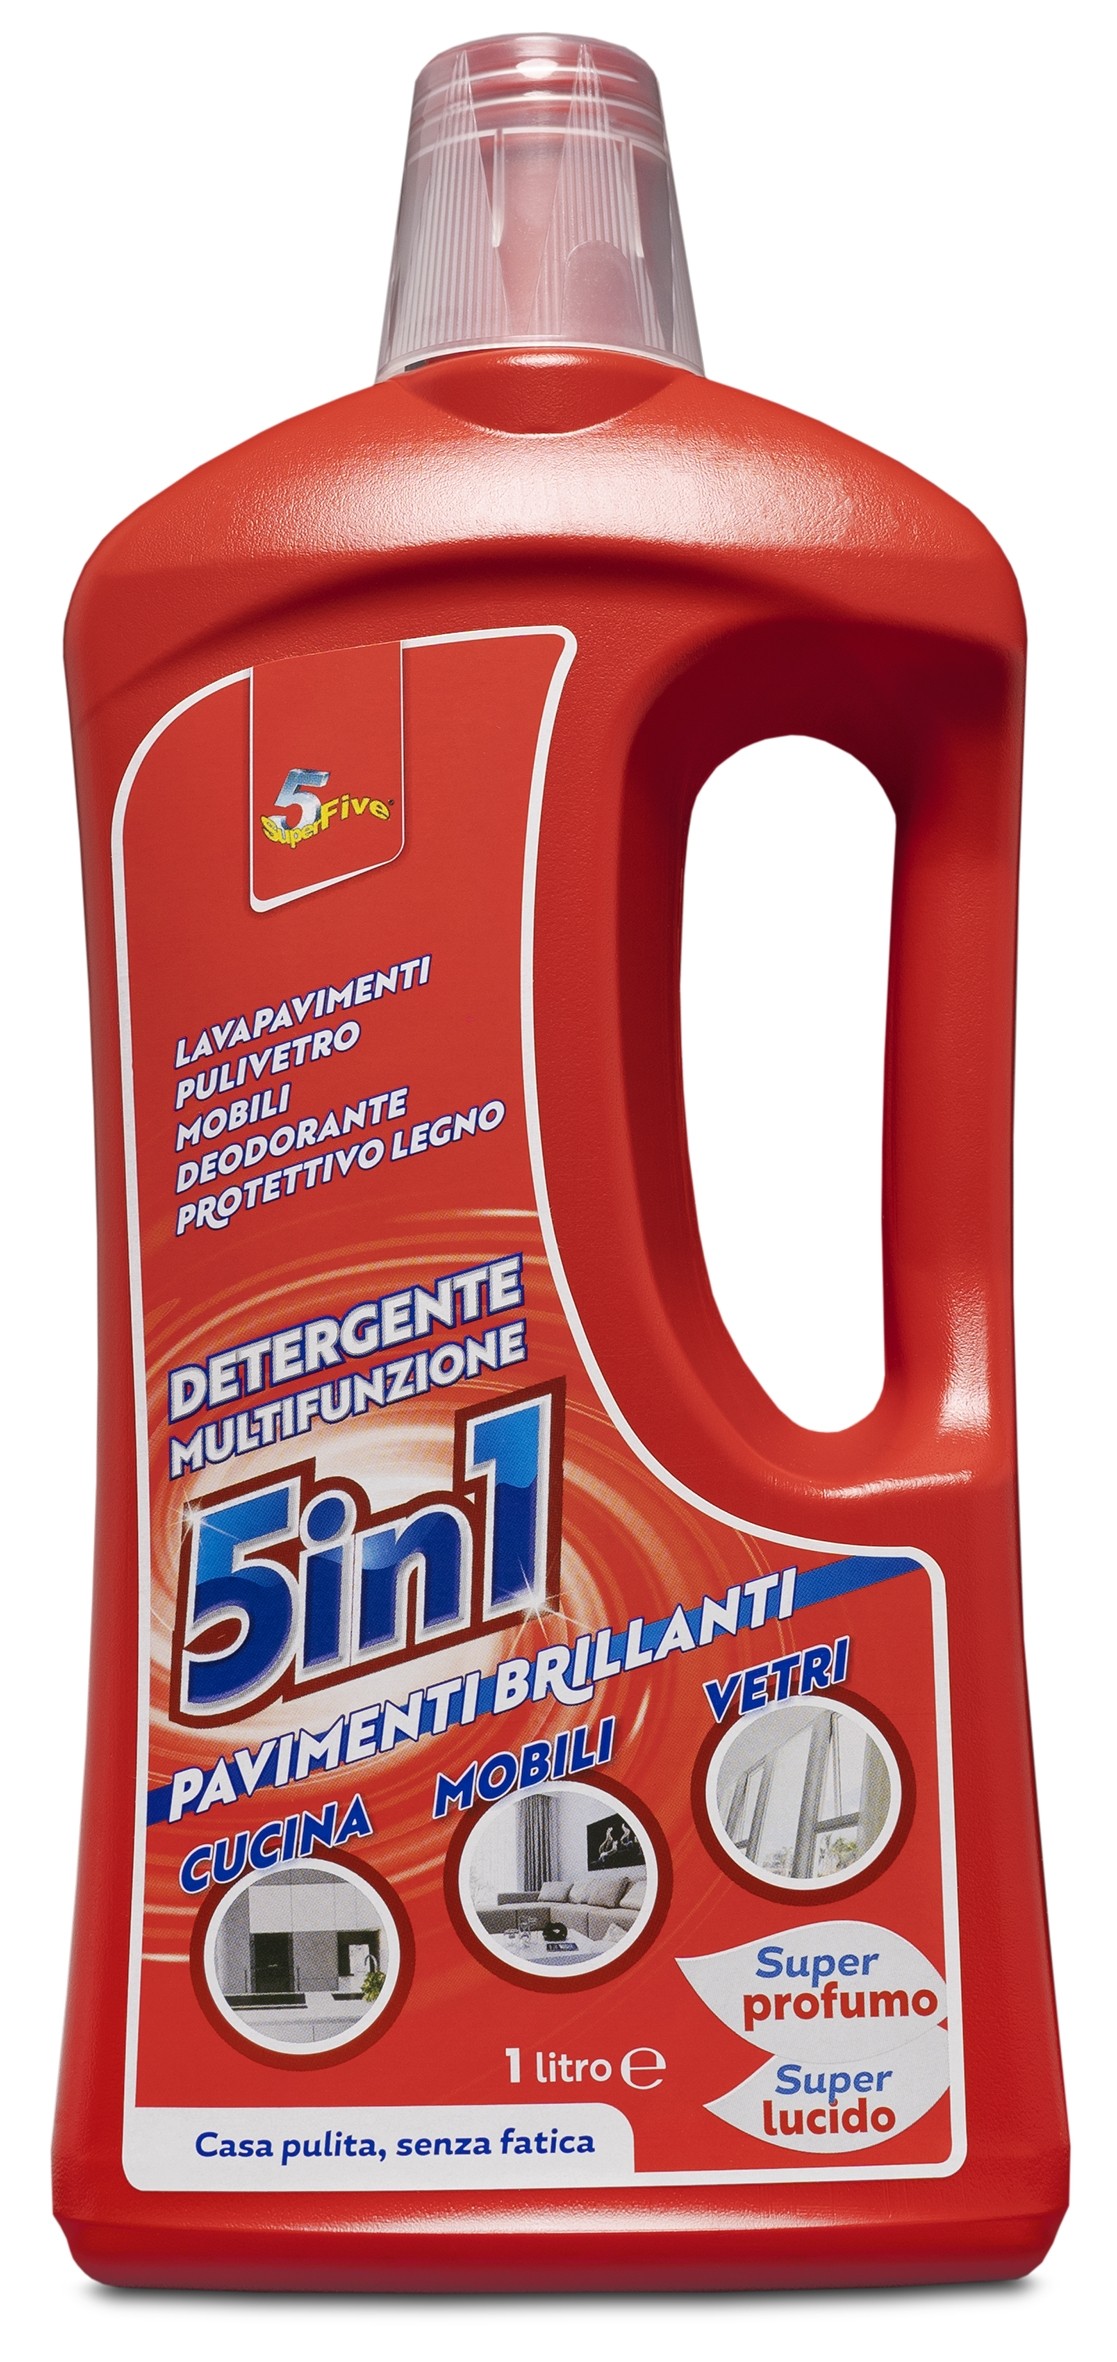 Superfive  Detergente Multi Funzione 5 in 1